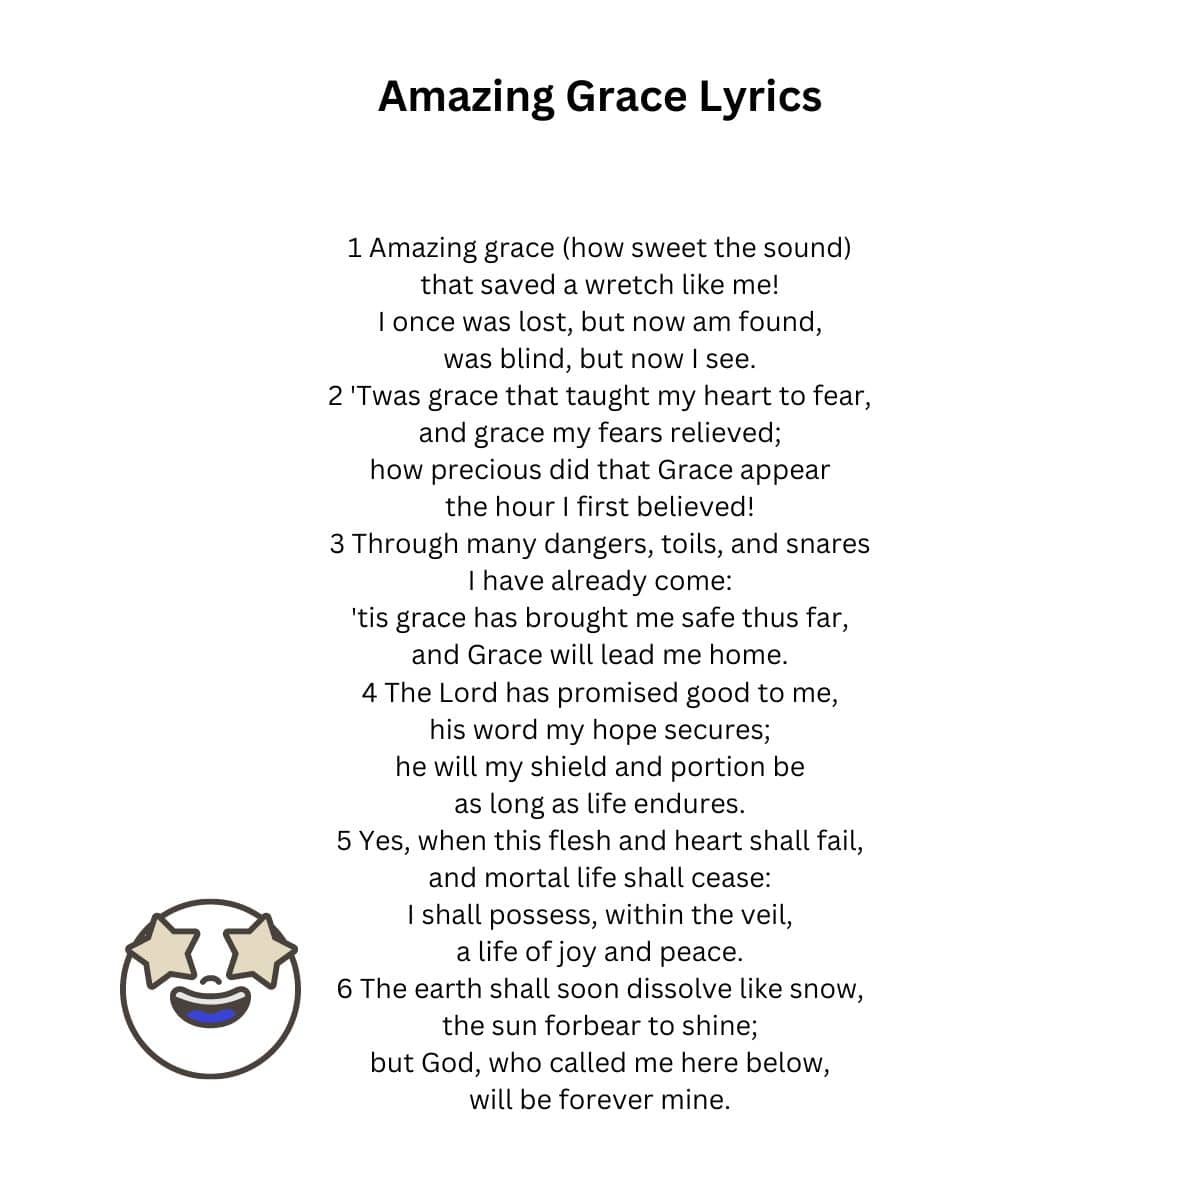 Amazing Grace Lyrics on a white background